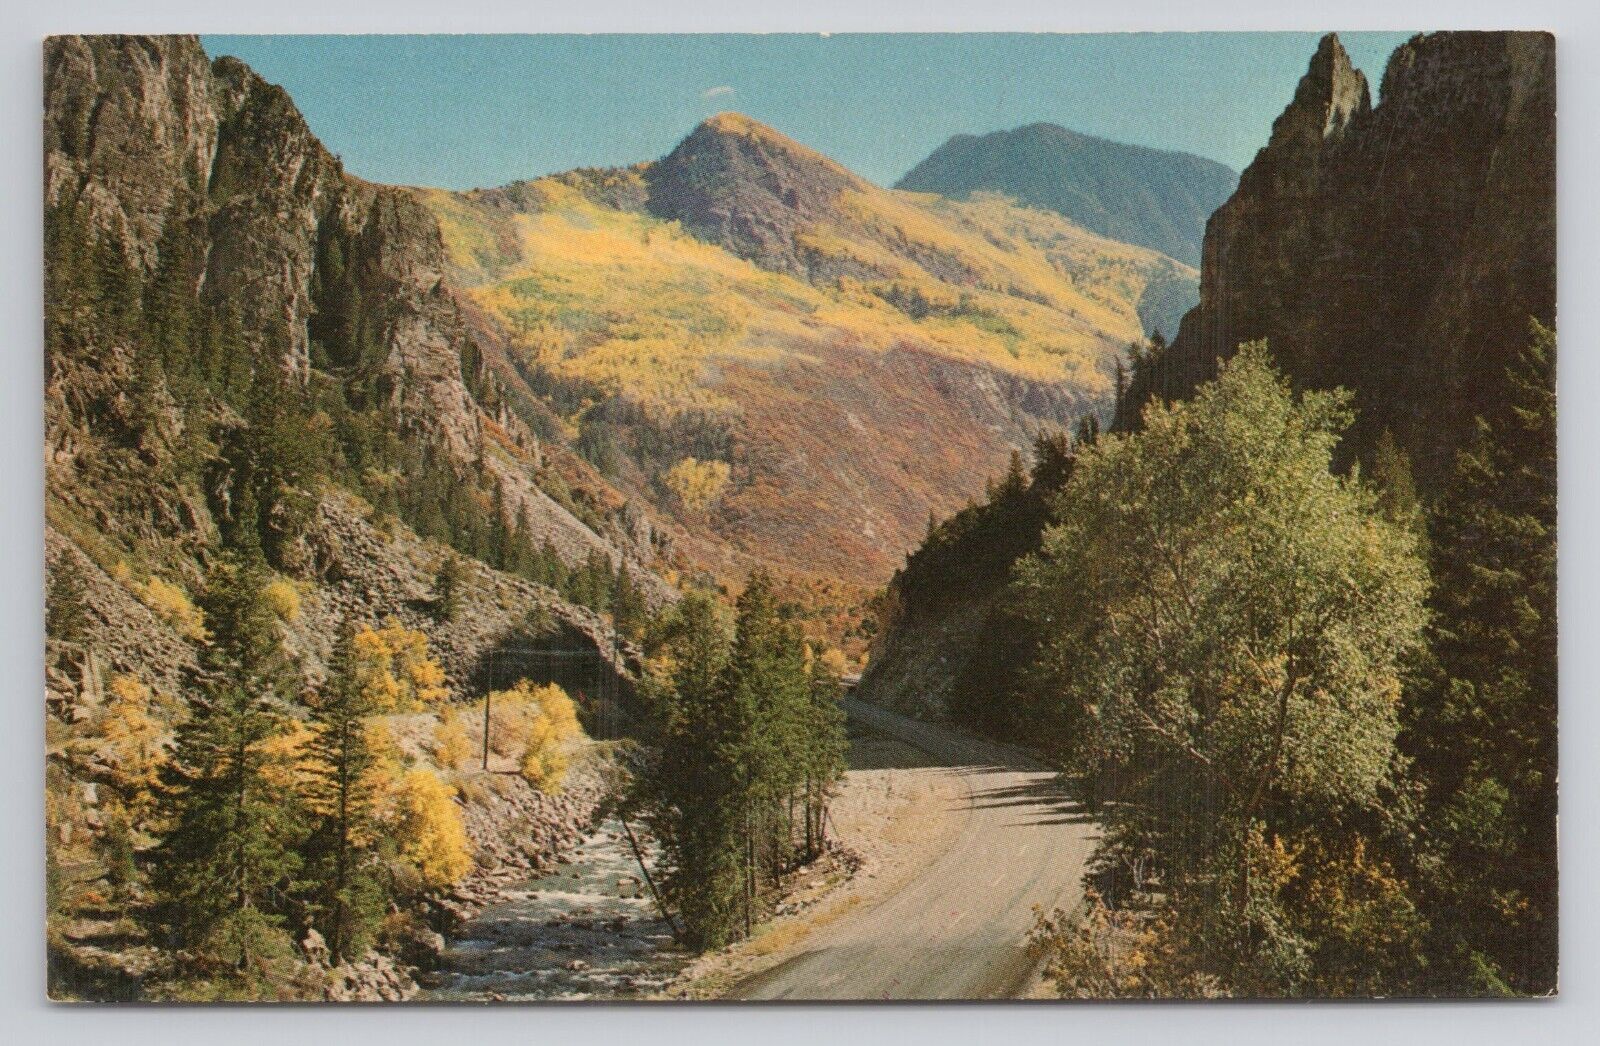 Postcard The Crystal River Canyon Along Colorado